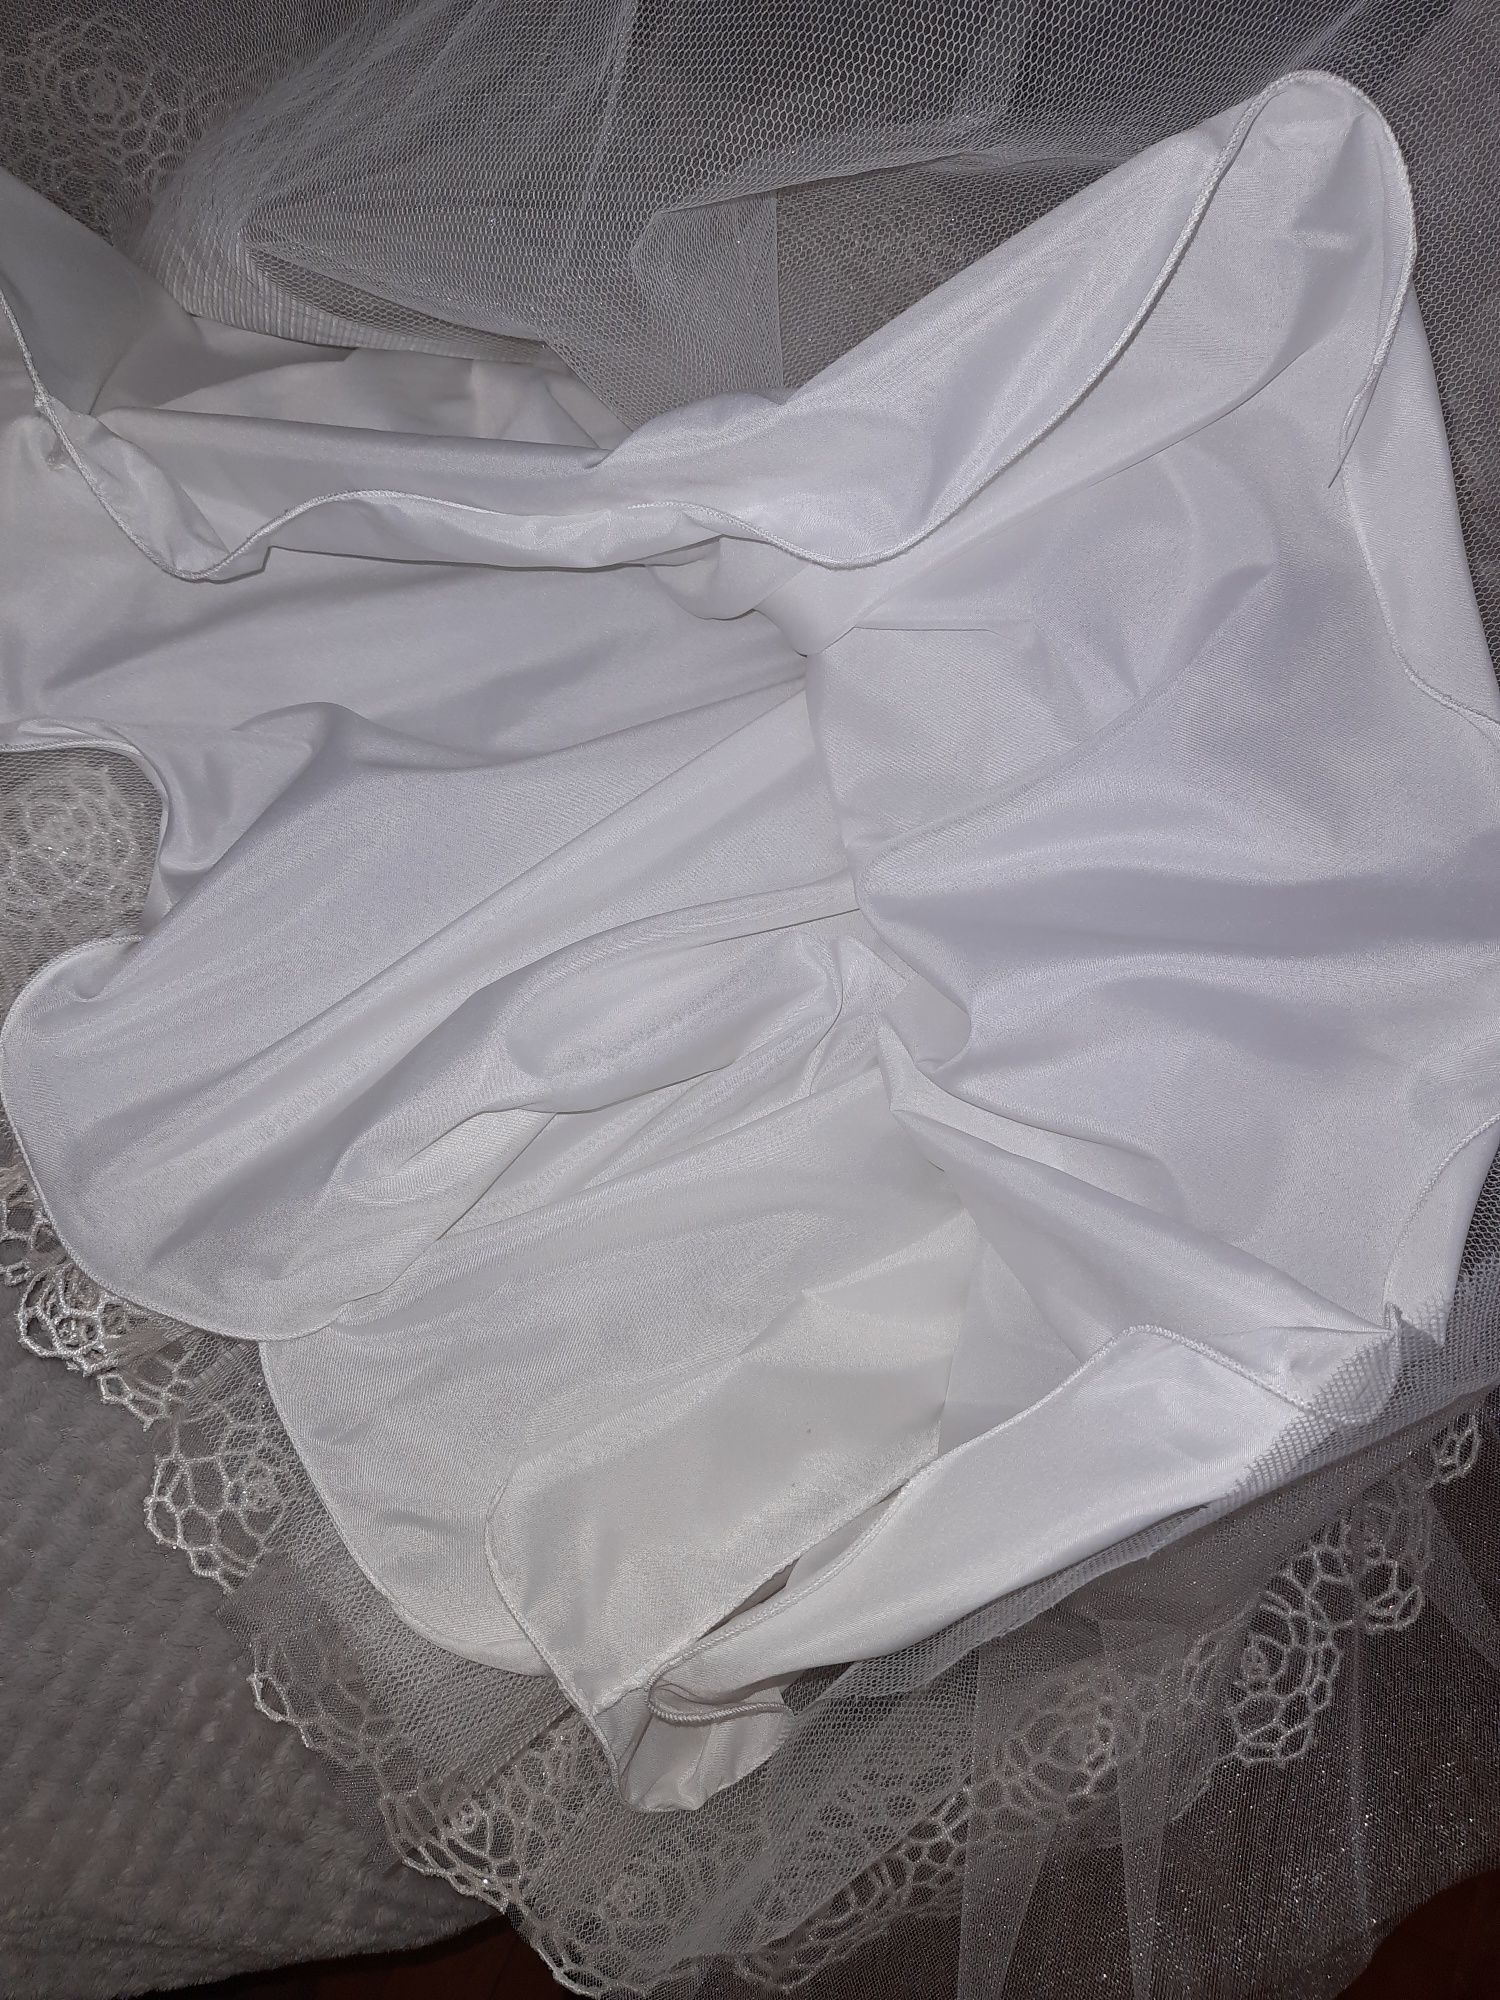 Продам очень красивое нарядное белое платье для детского утренника